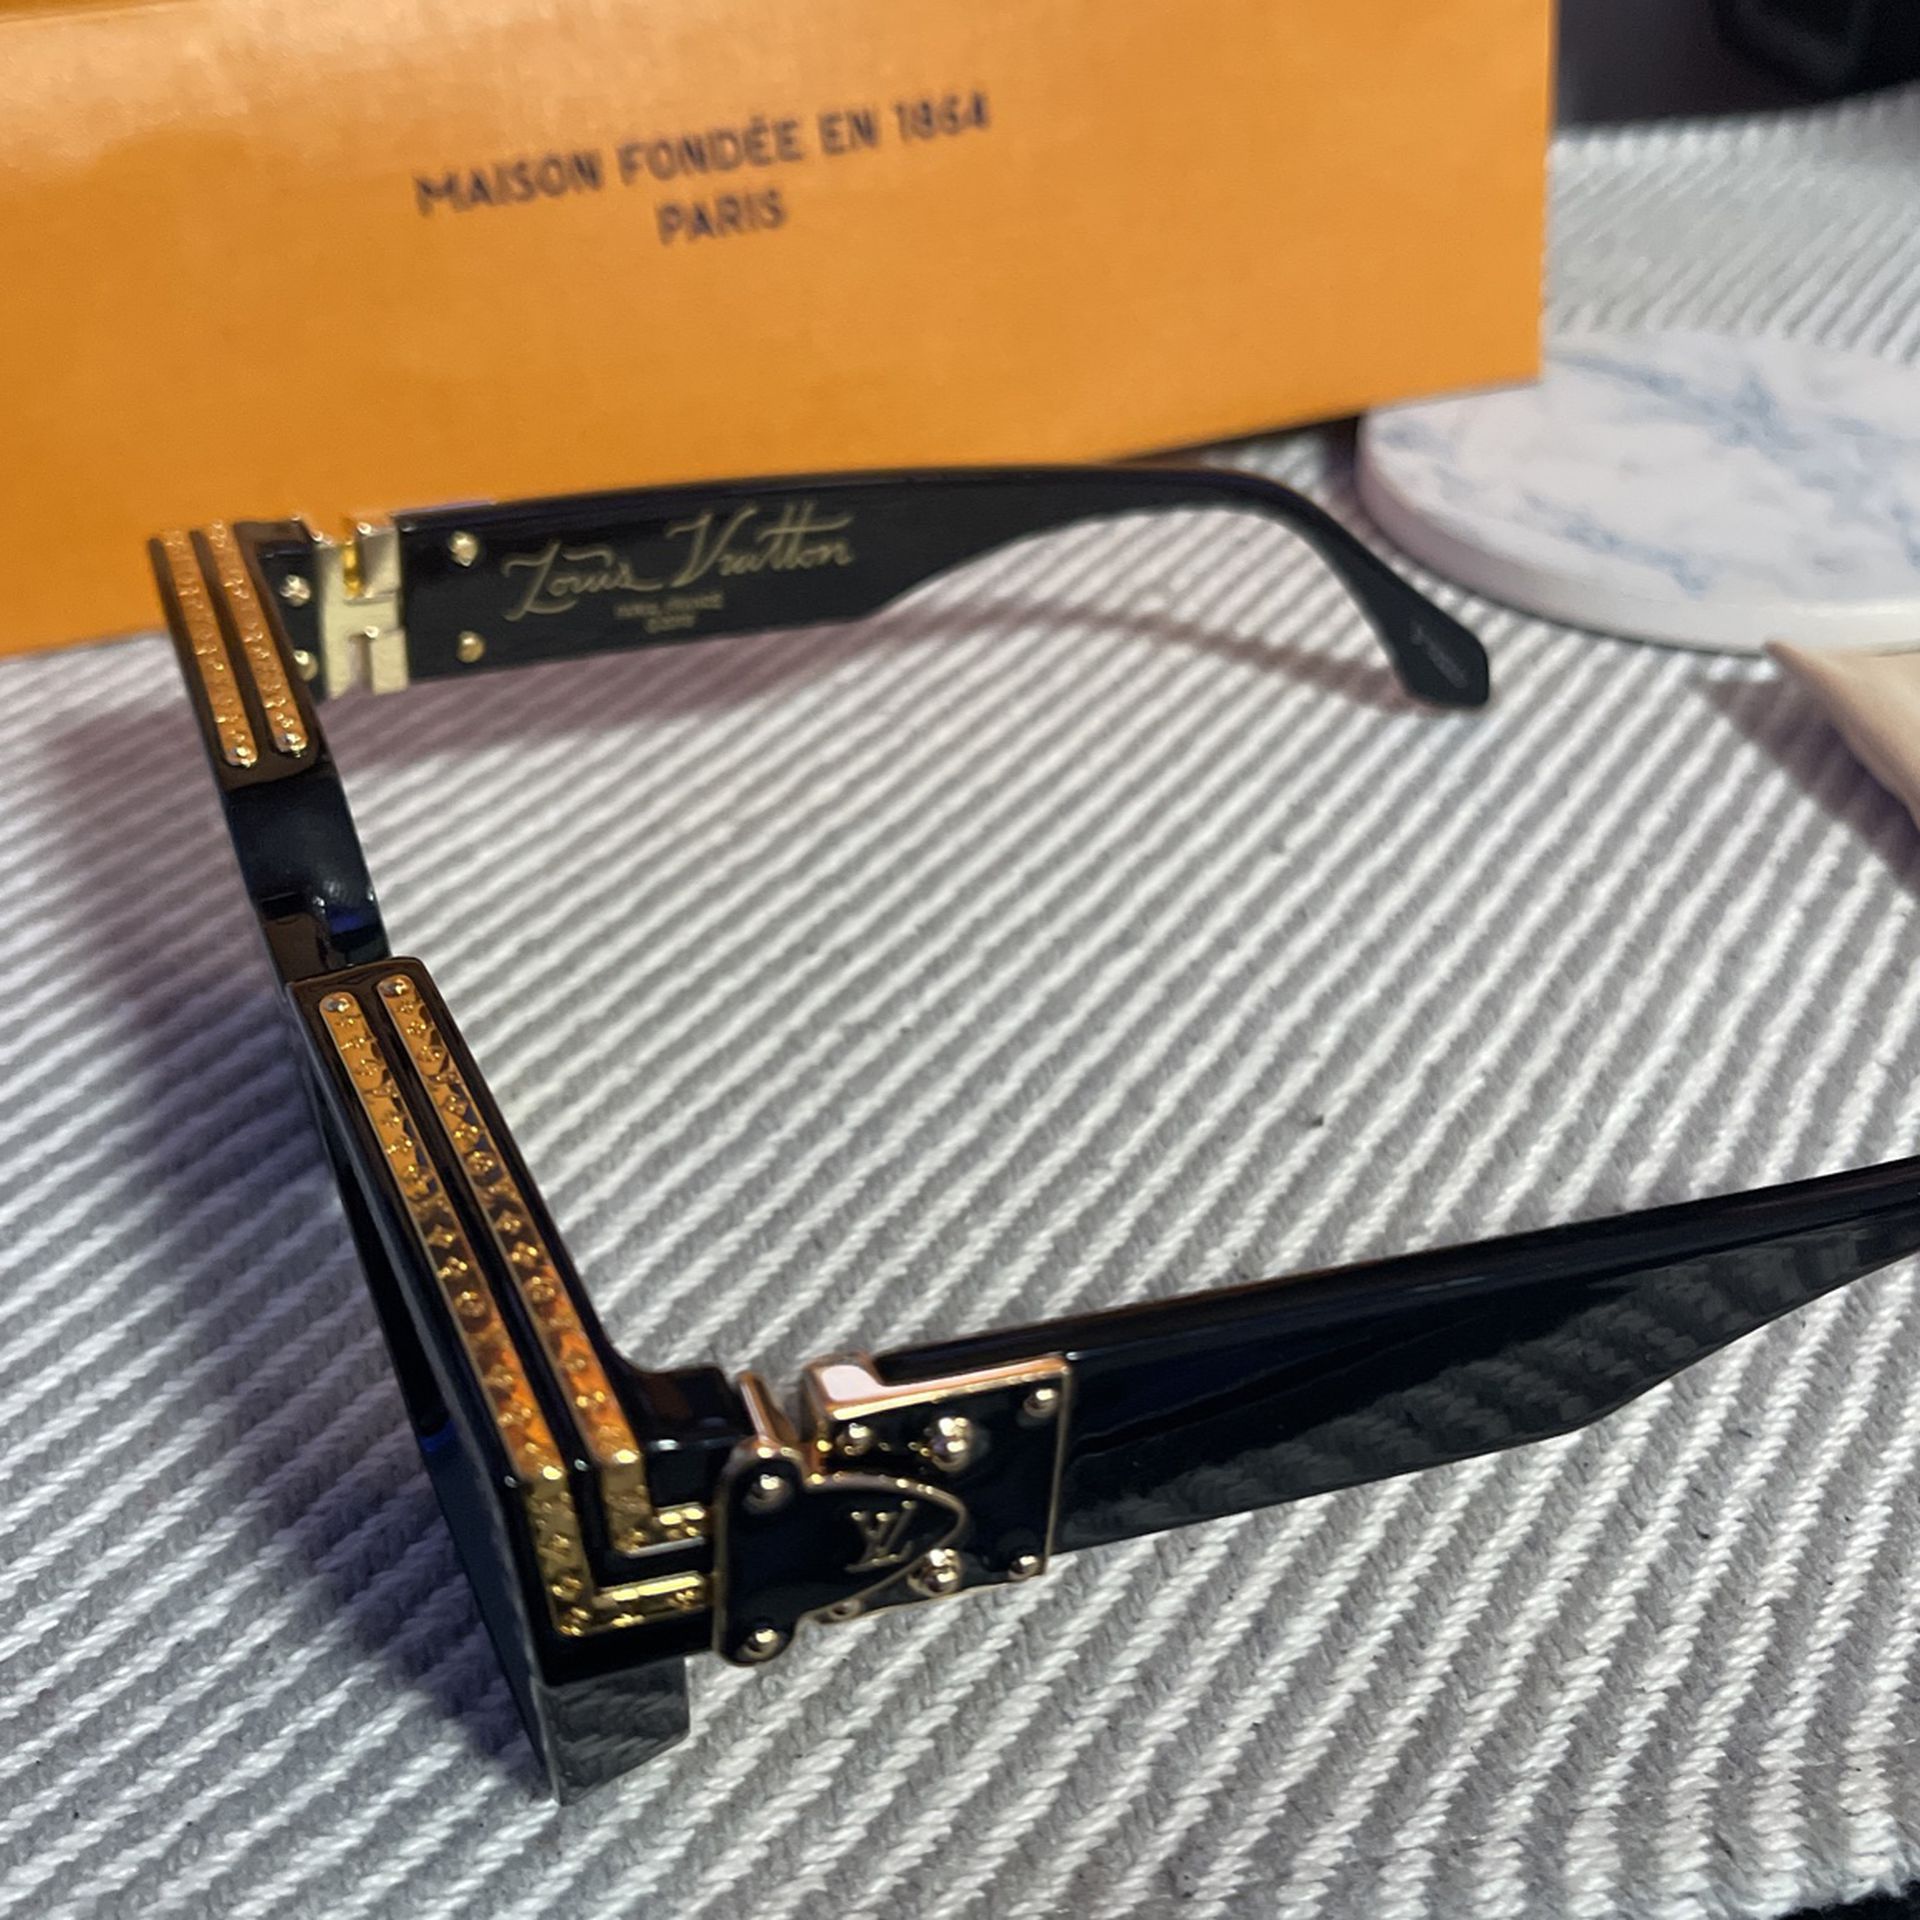 1.1 millionnaires sunglasses Louis Vuitton Silver in Plastic - 23254116